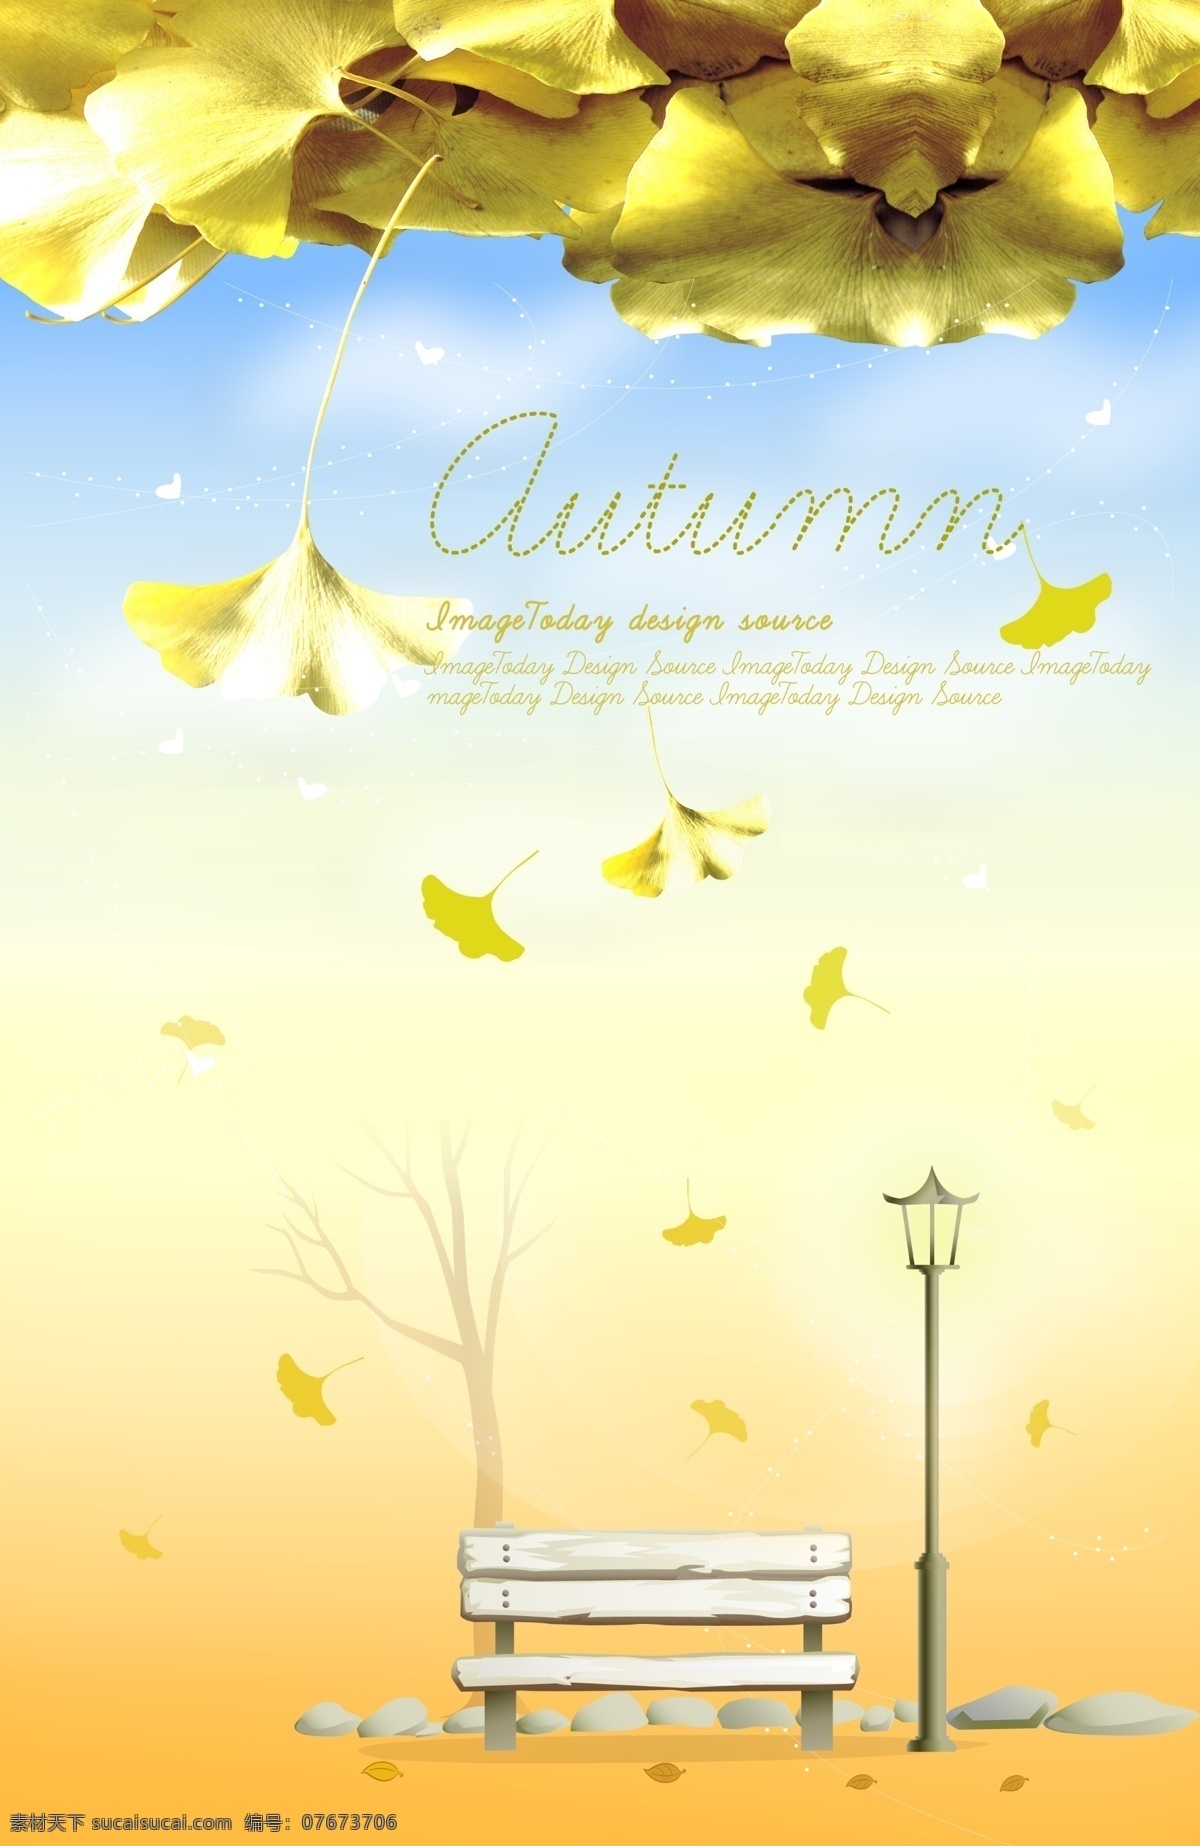 秋天 色彩 黄色 蓝色 英文 叶子 落叶 秋天色彩 花朵 花 树叶 花瓣 秋 中秋 节日 中秋节 木头 木板凳 石头 路灯 树干 路 白色